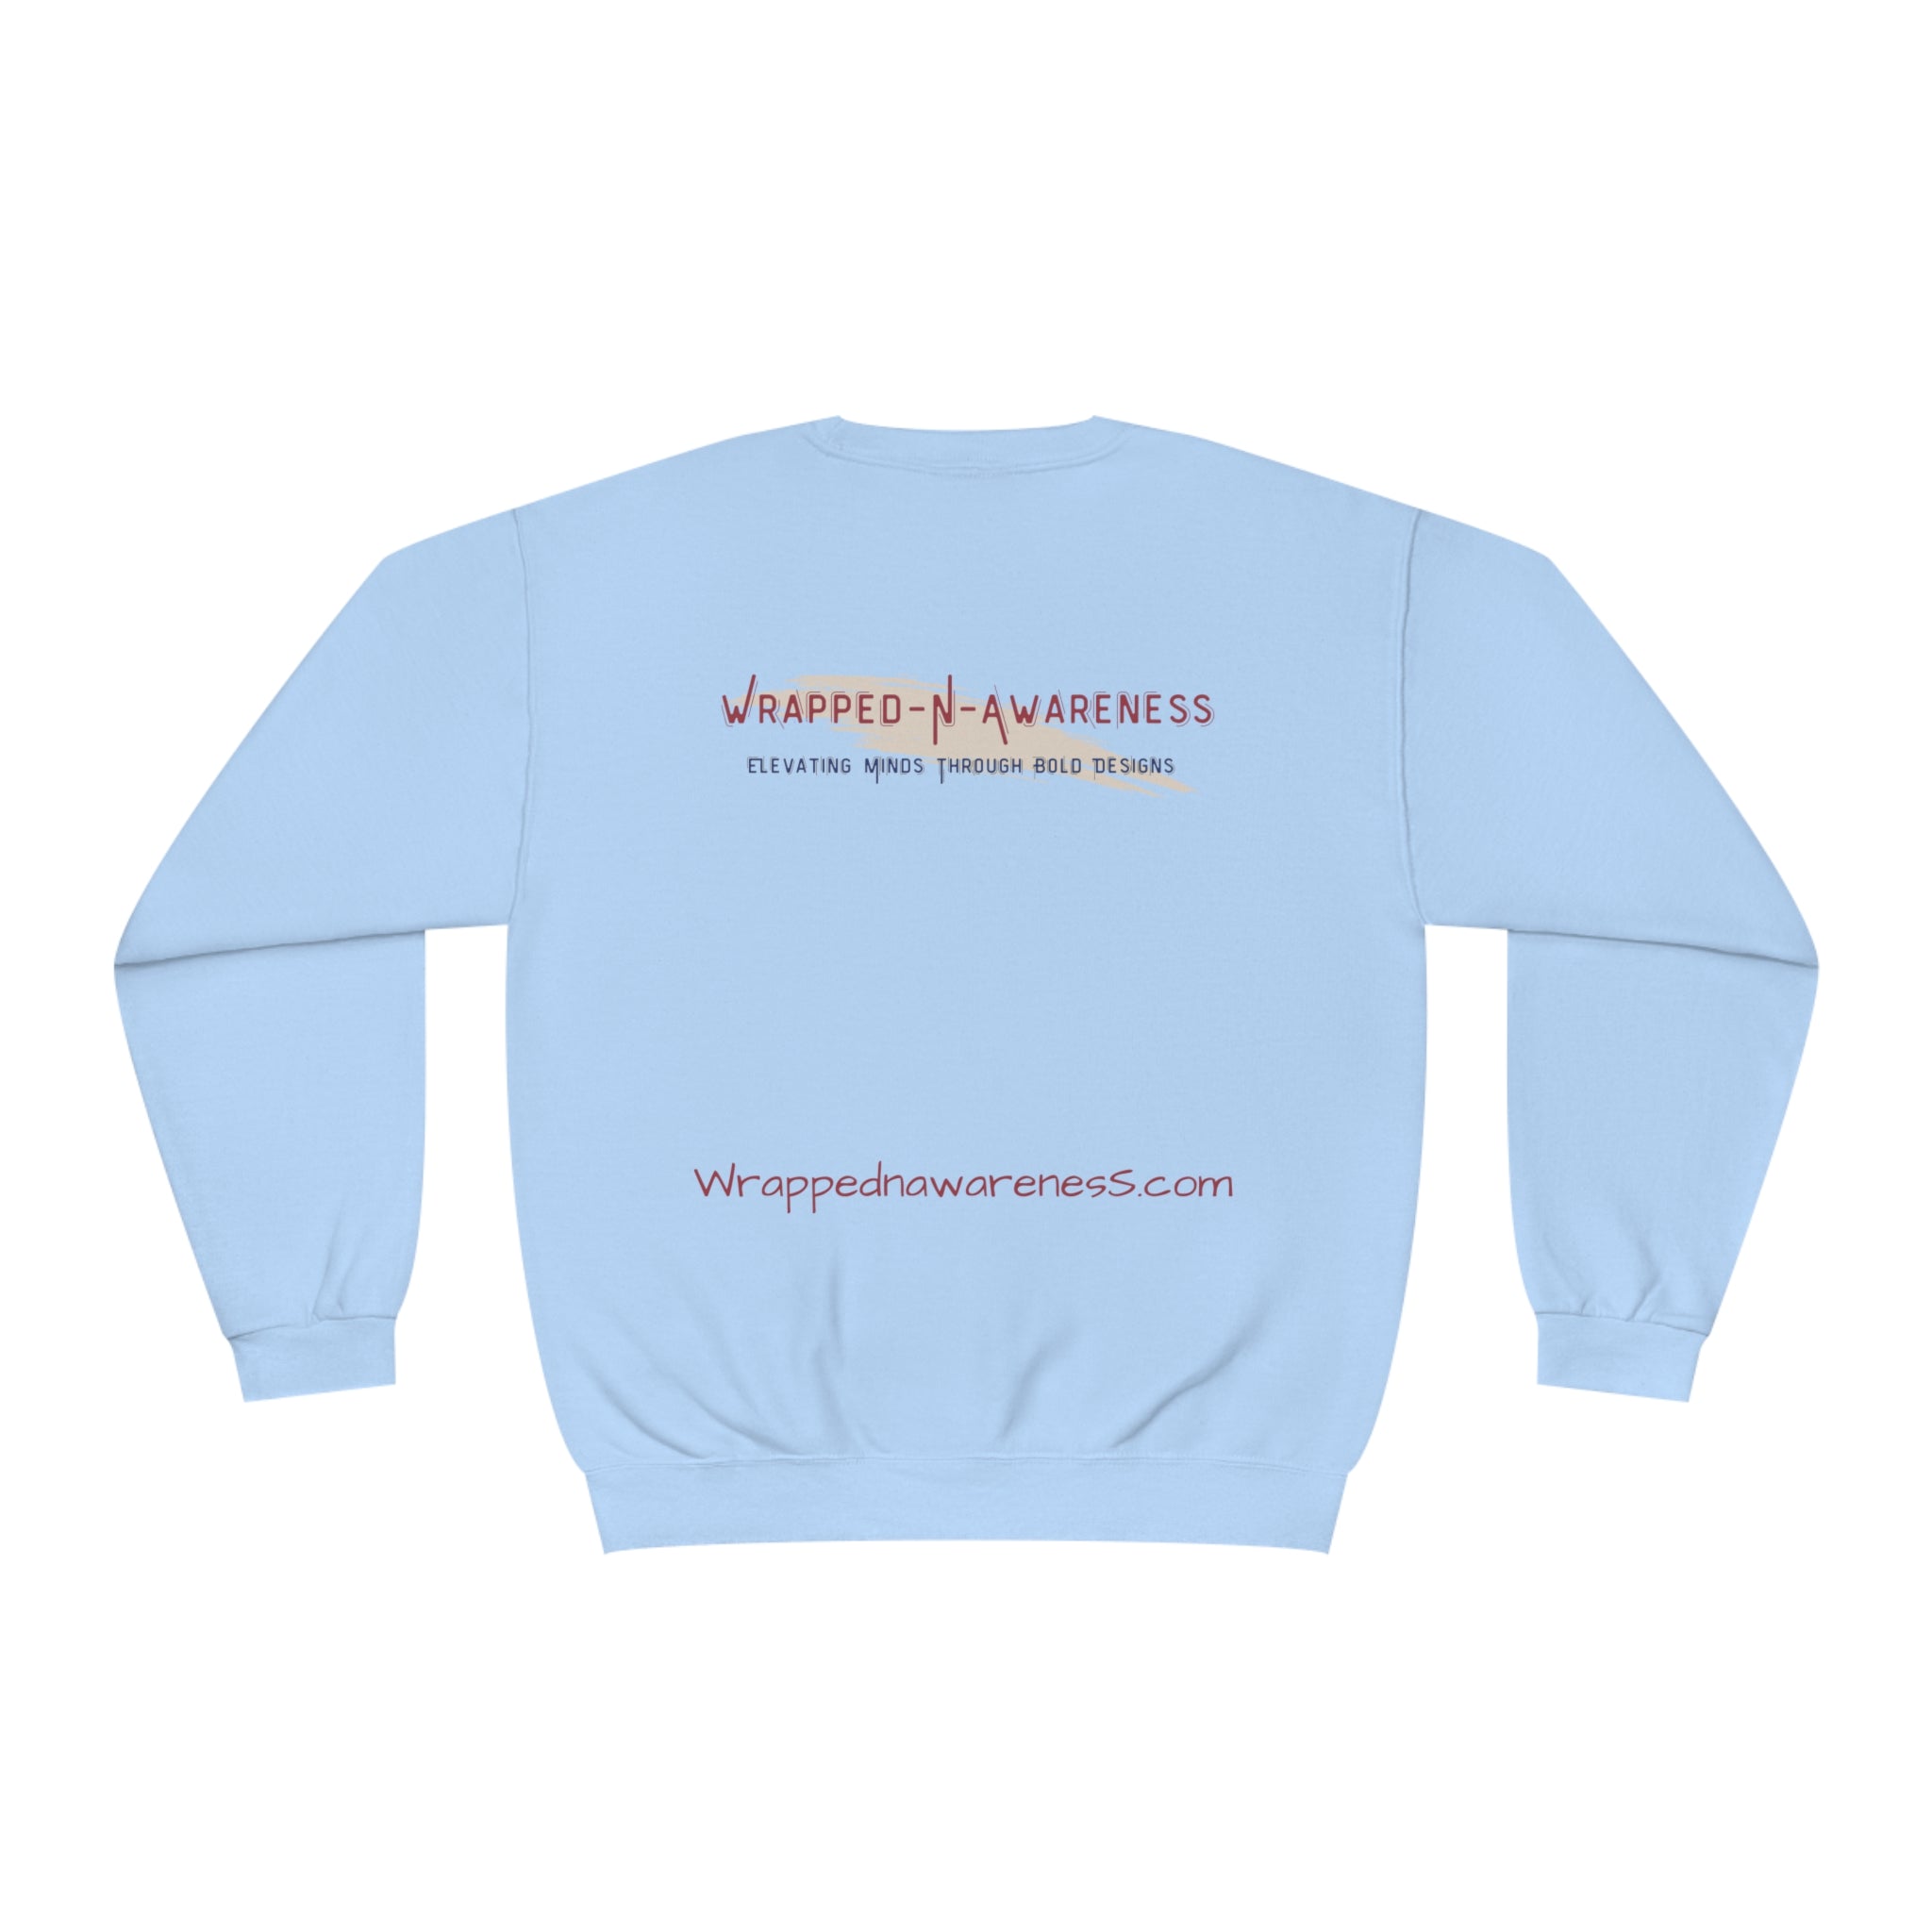 I Am Authentic Fleece Sweatshirt: Comfort & Positivity Sandstone Comfy Sweater Cozy Sweatshirt Crewneck Sweatshirt Fleece Pullover Graphic Sweatshirt Men's Sweatshirt Streatwear Sweatshirt Warm Outerwear Women's Sweatshirt Sweatshirt 17942717552843608542_2048 Printify